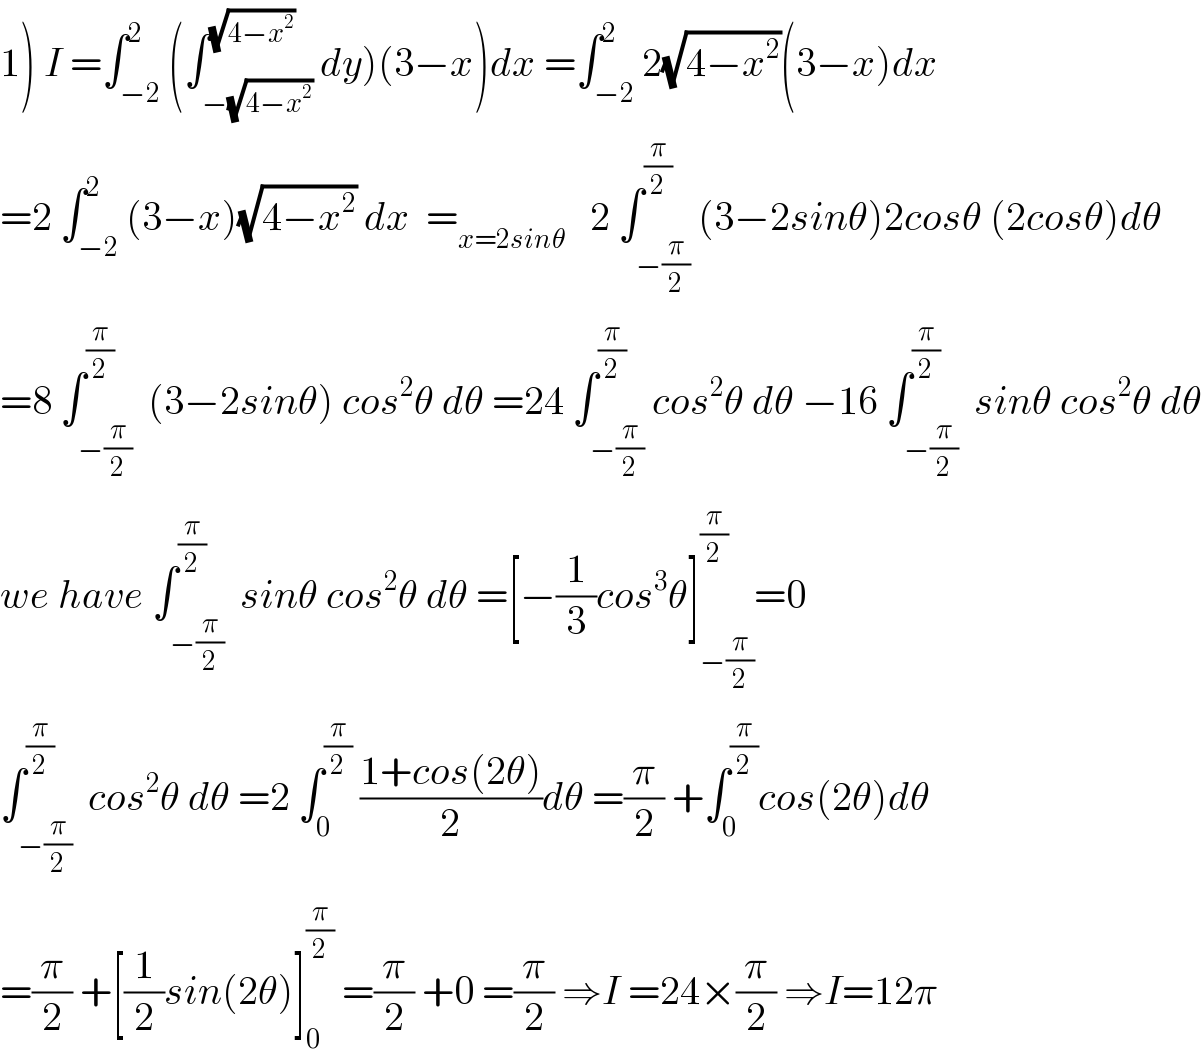 1) I =∫_(−2) ^2 (∫_(−(√(4−x^2 ))) ^(√(4−x^2 )) dy)(3−x)dx =∫_(−2) ^2 2(√(4−x^2 ))(3−x)dx  =2 ∫_(−2) ^2 (3−x)(√(4−x^2 )) dx  =_(x=2sinθ)    2 ∫_(−(π/2)) ^(π/2) (3−2sinθ)2cosθ (2cosθ)dθ  =8 ∫_(−(π/2)) ^(π/2)  (3−2sinθ) cos^2 θ dθ =24 ∫_(−(π/2)) ^(π/2) cos^2 θ dθ −16 ∫_(−(π/2)) ^(π/2)  sinθ cos^2 θ dθ  we have ∫_(−(π/2)) ^(π/2)  sinθ cos^2 θ dθ =[−(1/3)cos^3 θ]_(−(π/2)) ^(π/2) =0  ∫_(−(π/2)) ^(π/2)  cos^2 θ dθ =2 ∫_0 ^(π/2)  ((1+cos(2θ))/2)dθ =(π/2) +∫_0 ^(π/2) cos(2θ)dθ  =(π/2) +[(1/2)sin(2θ)]_0 ^(π/2)  =(π/2) +0 =(π/2) ⇒I =24×(π/2) ⇒I=12π  